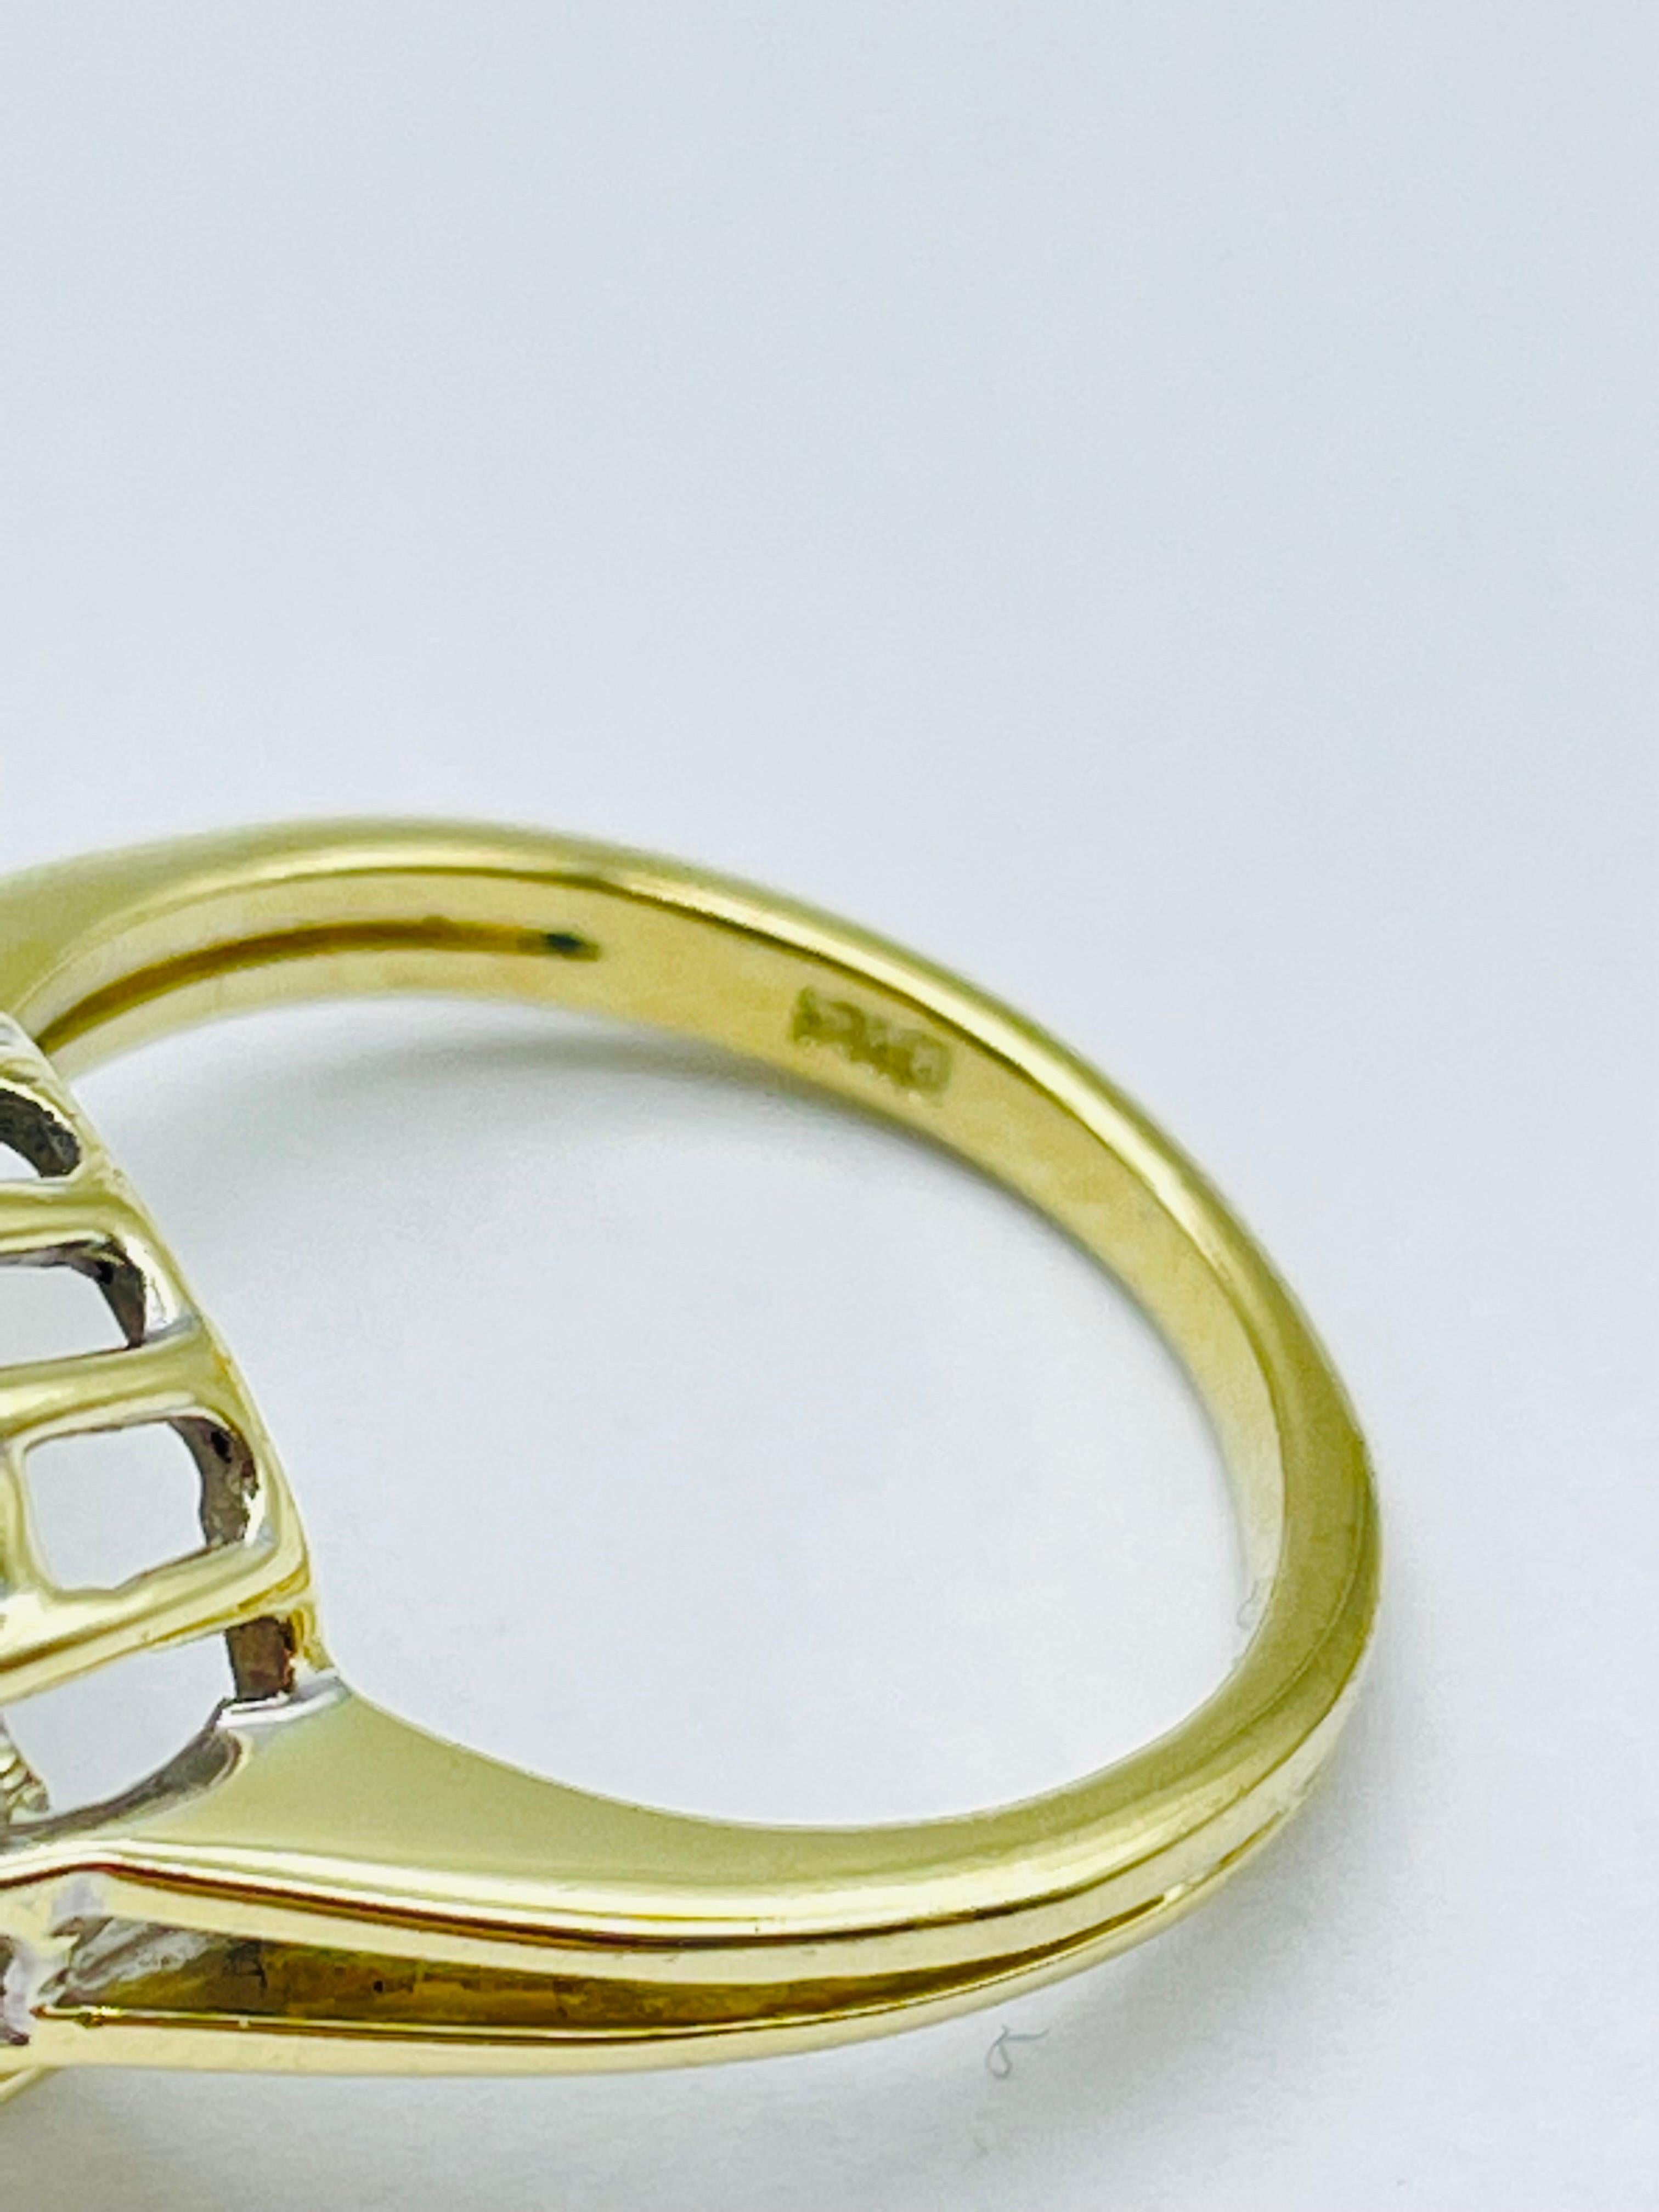 Unique 14k Gold Ring with 8 Brilliant-Cut Diamonds Each 0.15 Carat Blue Sapphire For Sale 4